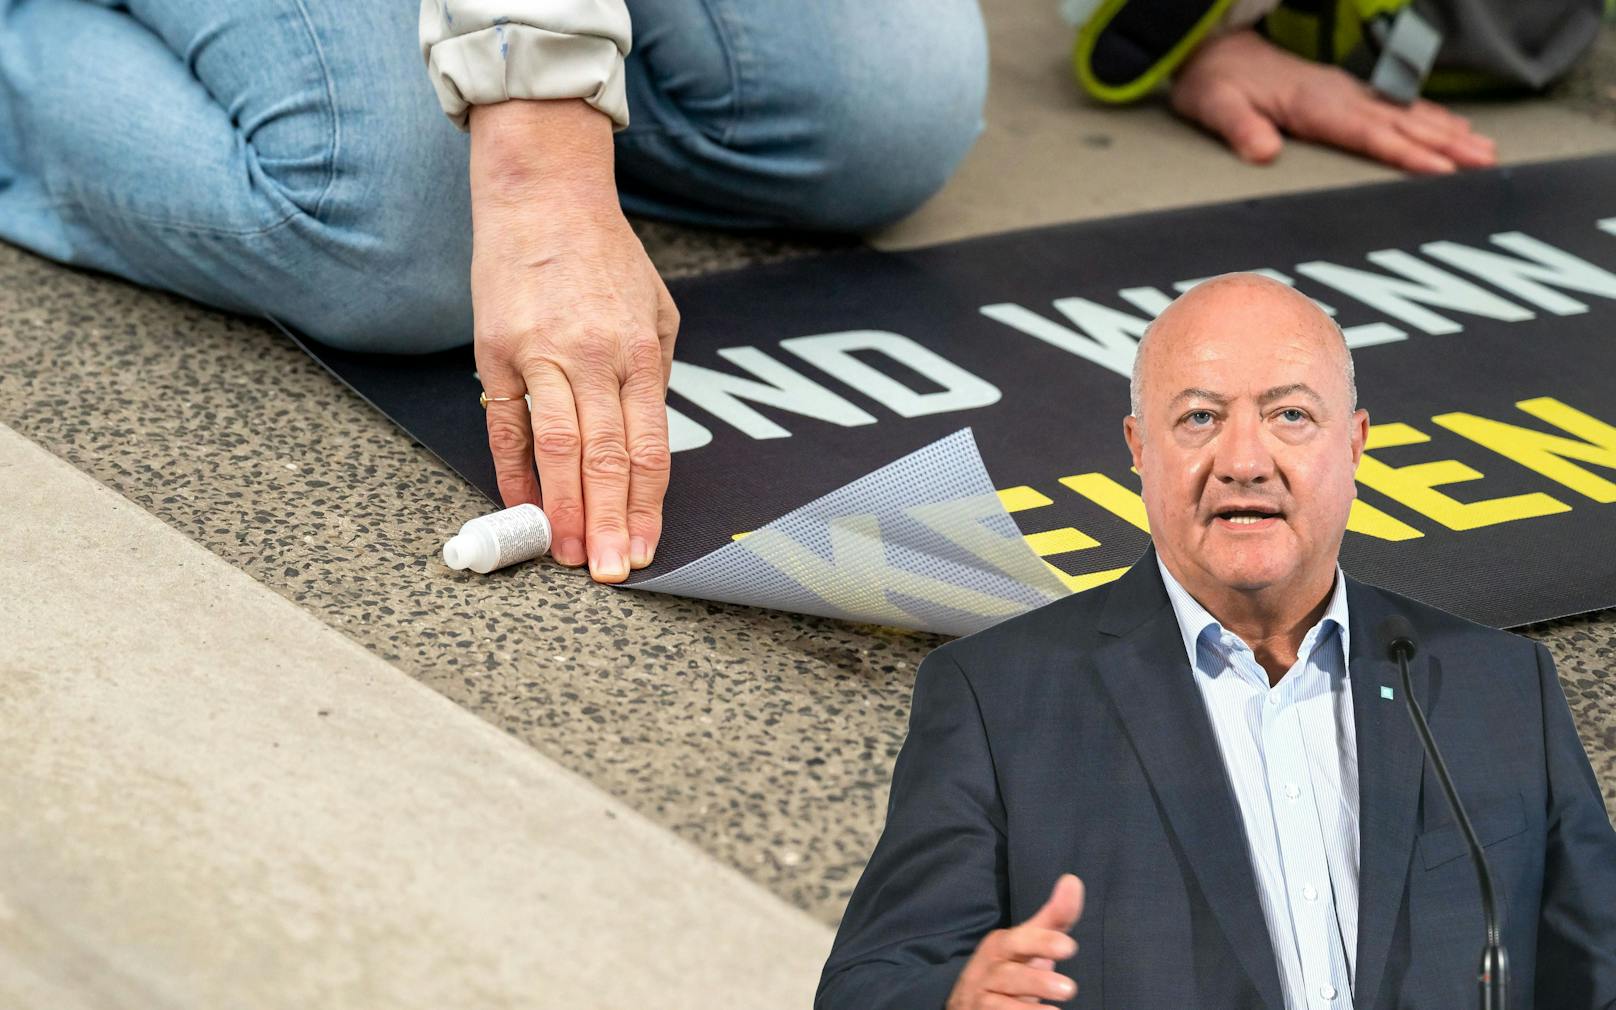 ÖVP-Generalsekretär Christian Stocker holt zum Rundumschlag gegen die "Letzte Generation" aus.